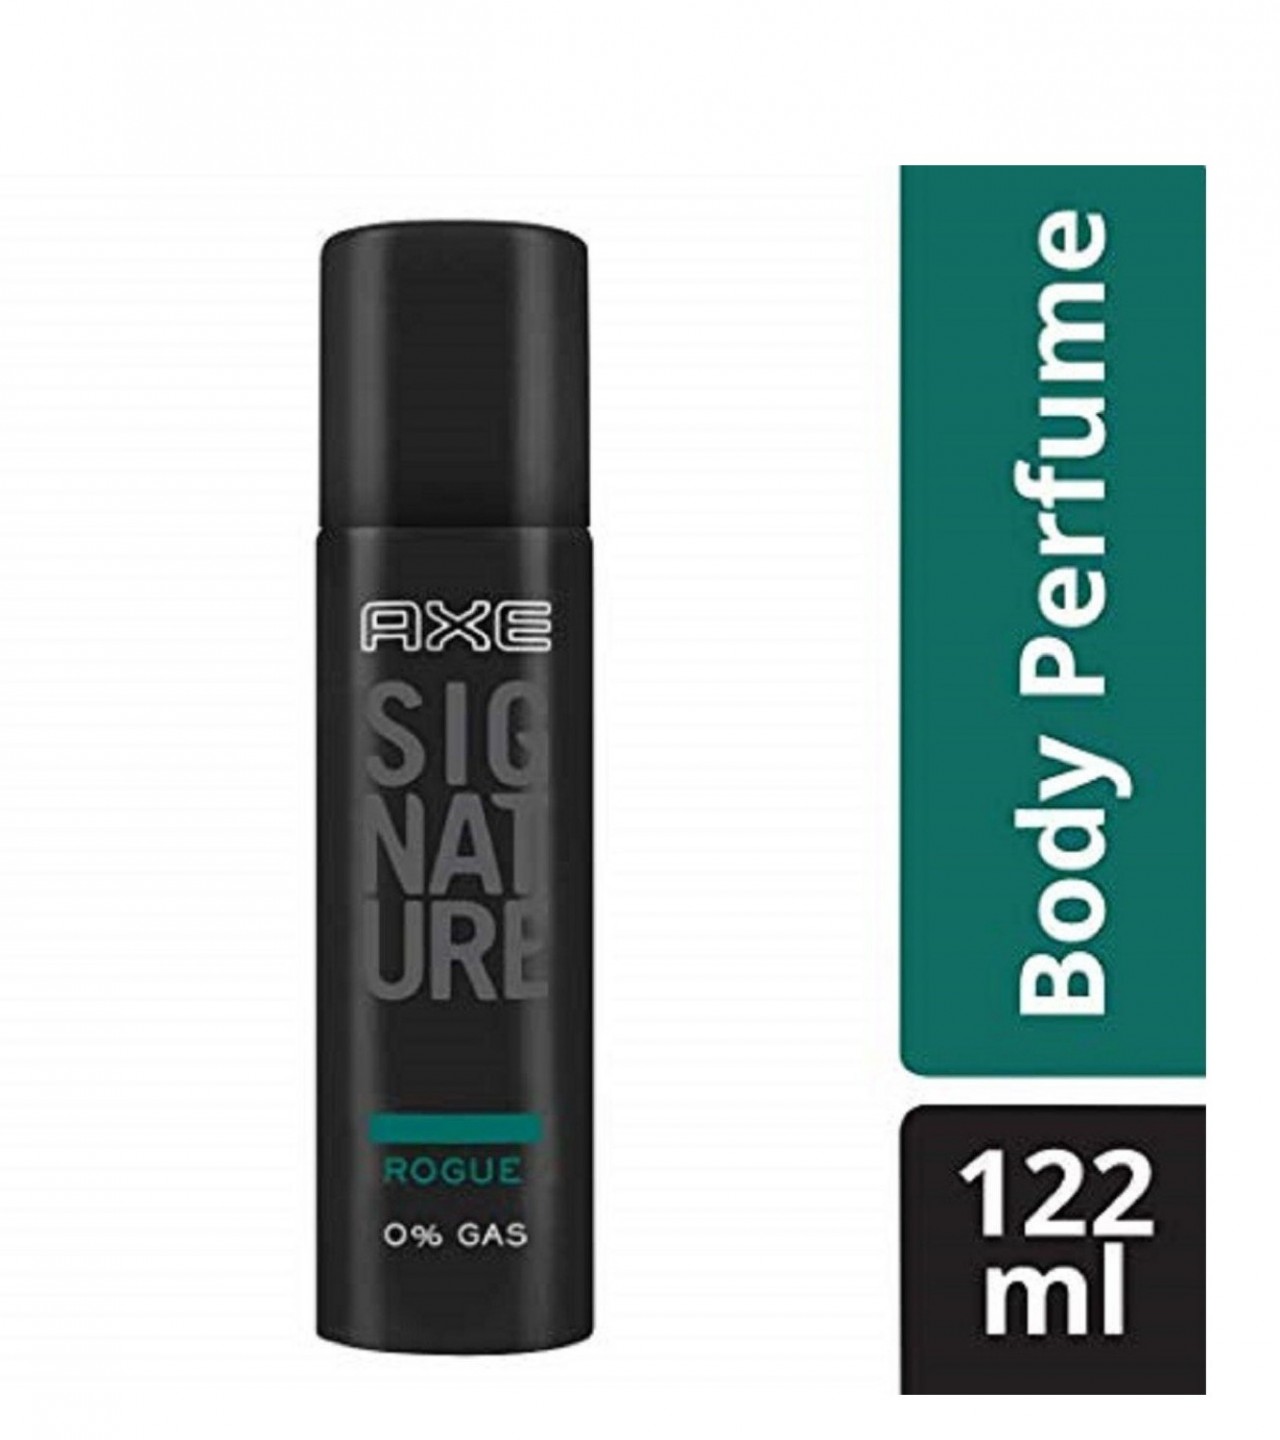 Axe Signature Rogue Perfume Body Spray For Men - 122 ml